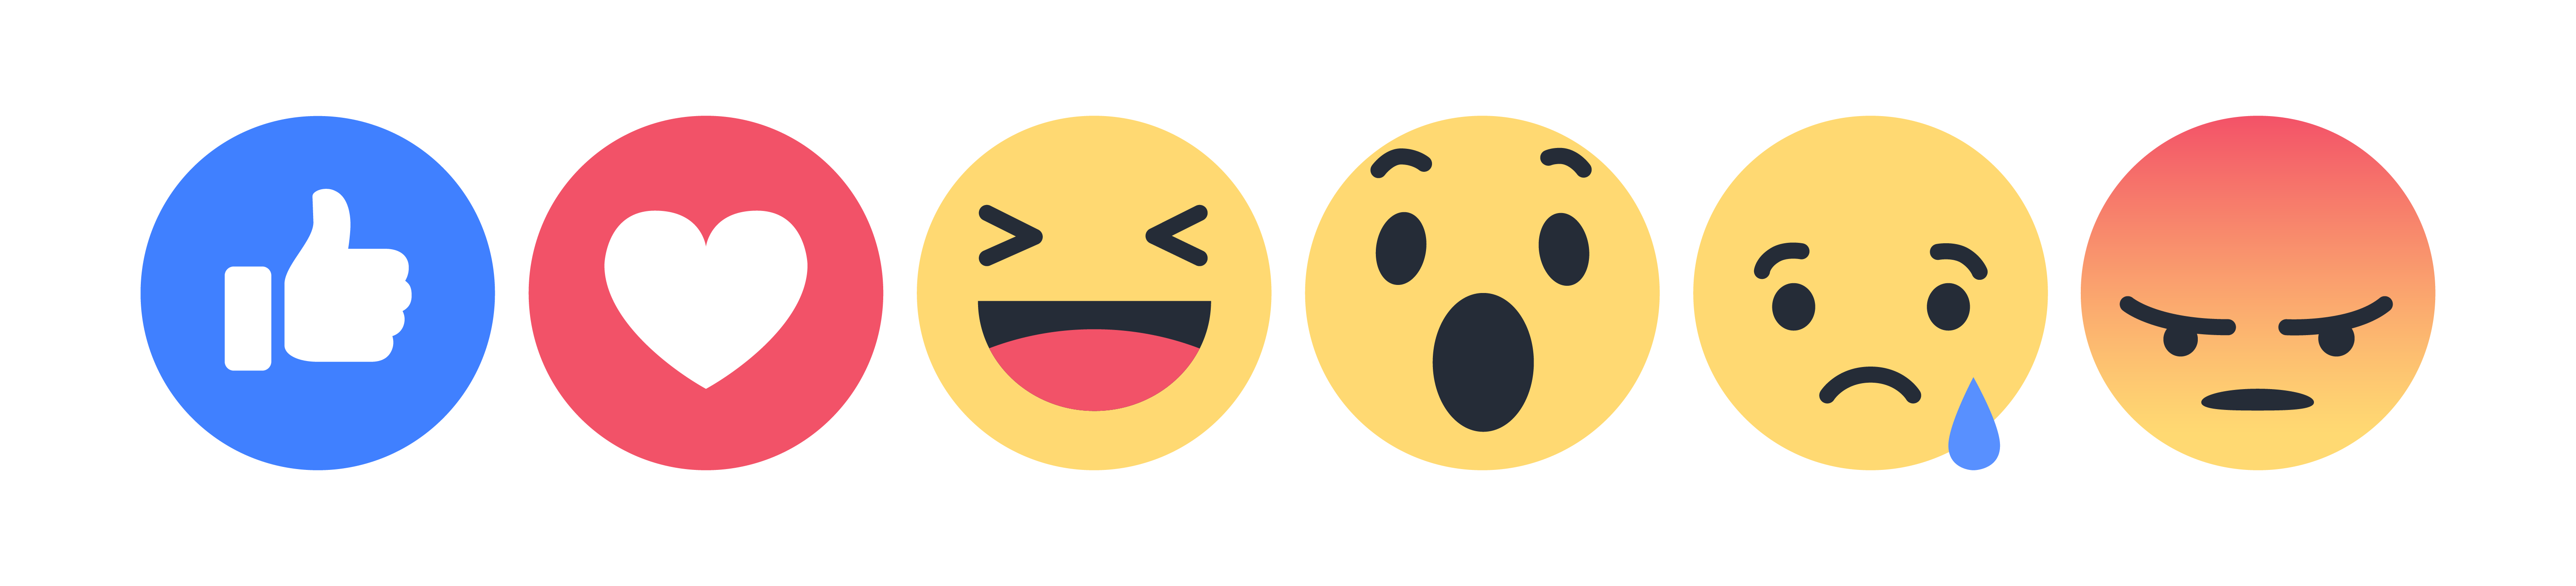 Icons Smile Angry Like Emoji PNG